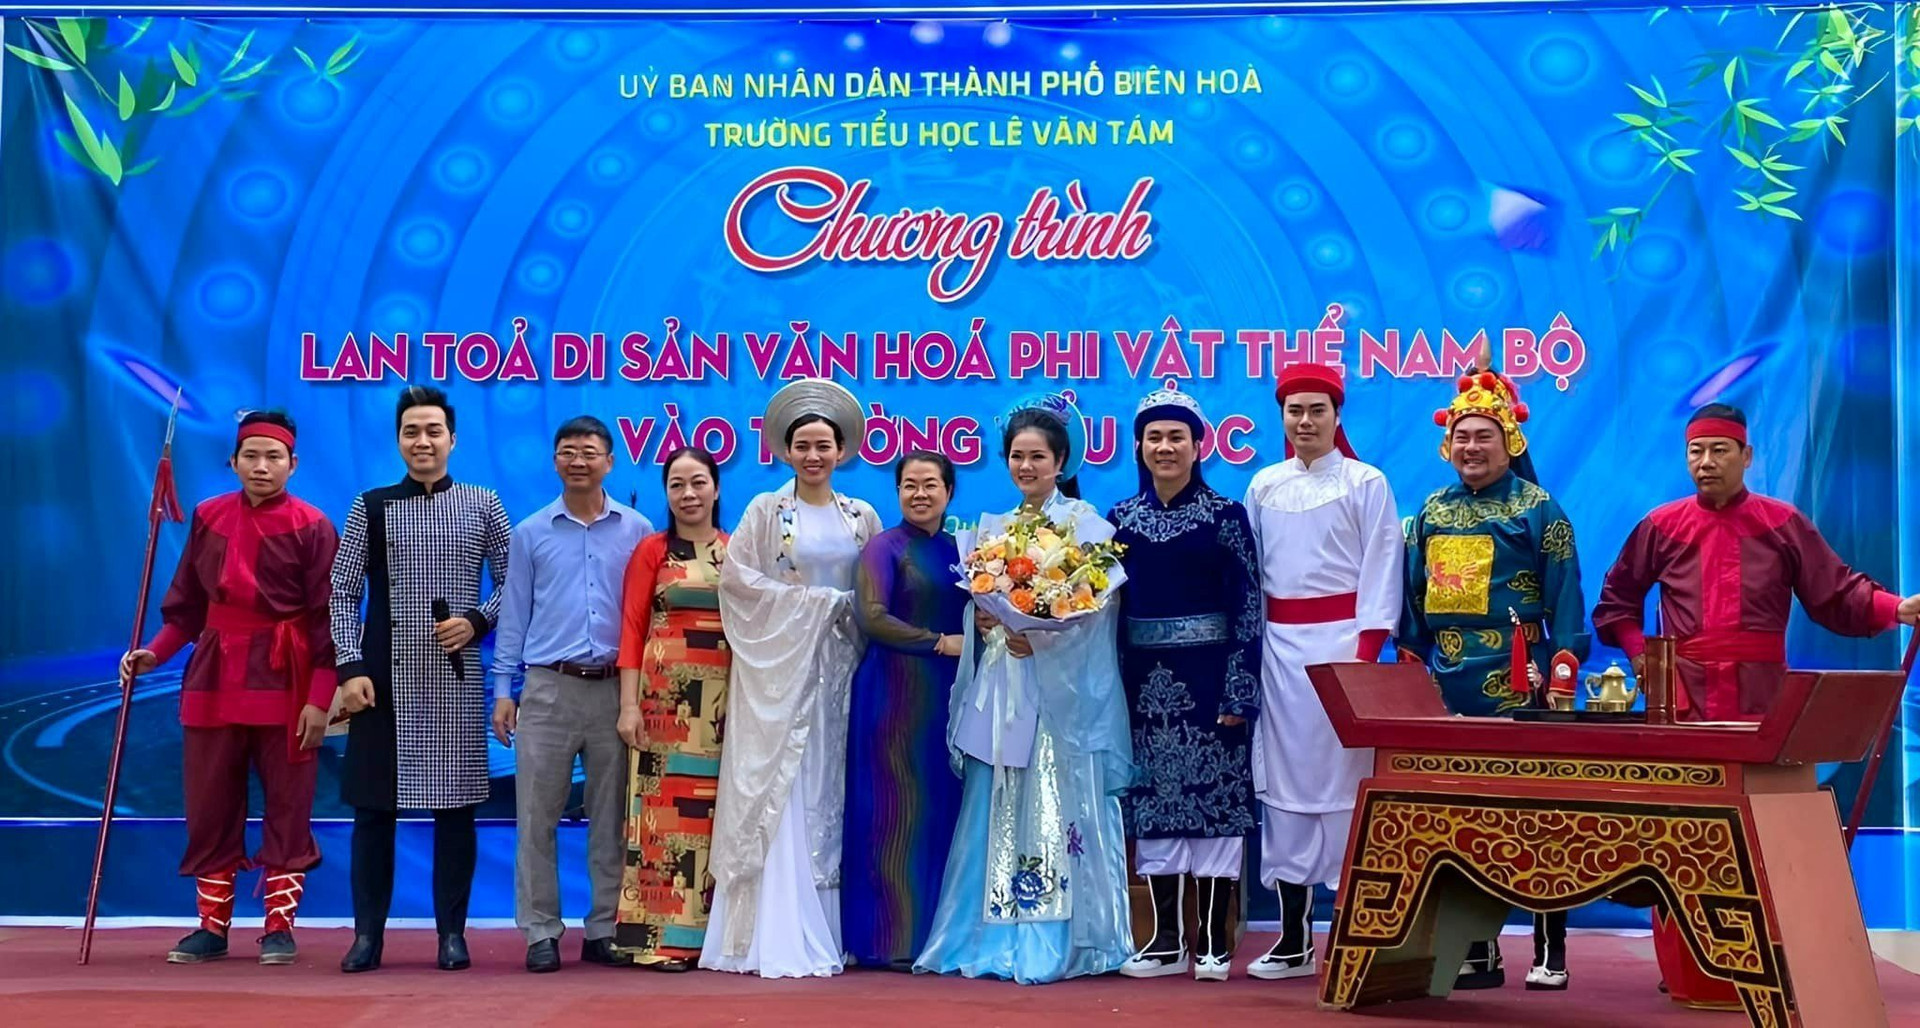 Lãnh đạo trường tiểu học Lê Văn Tám tặng hoa cho các diễn viên Nhà hát nghệ thuật Đồng Nai